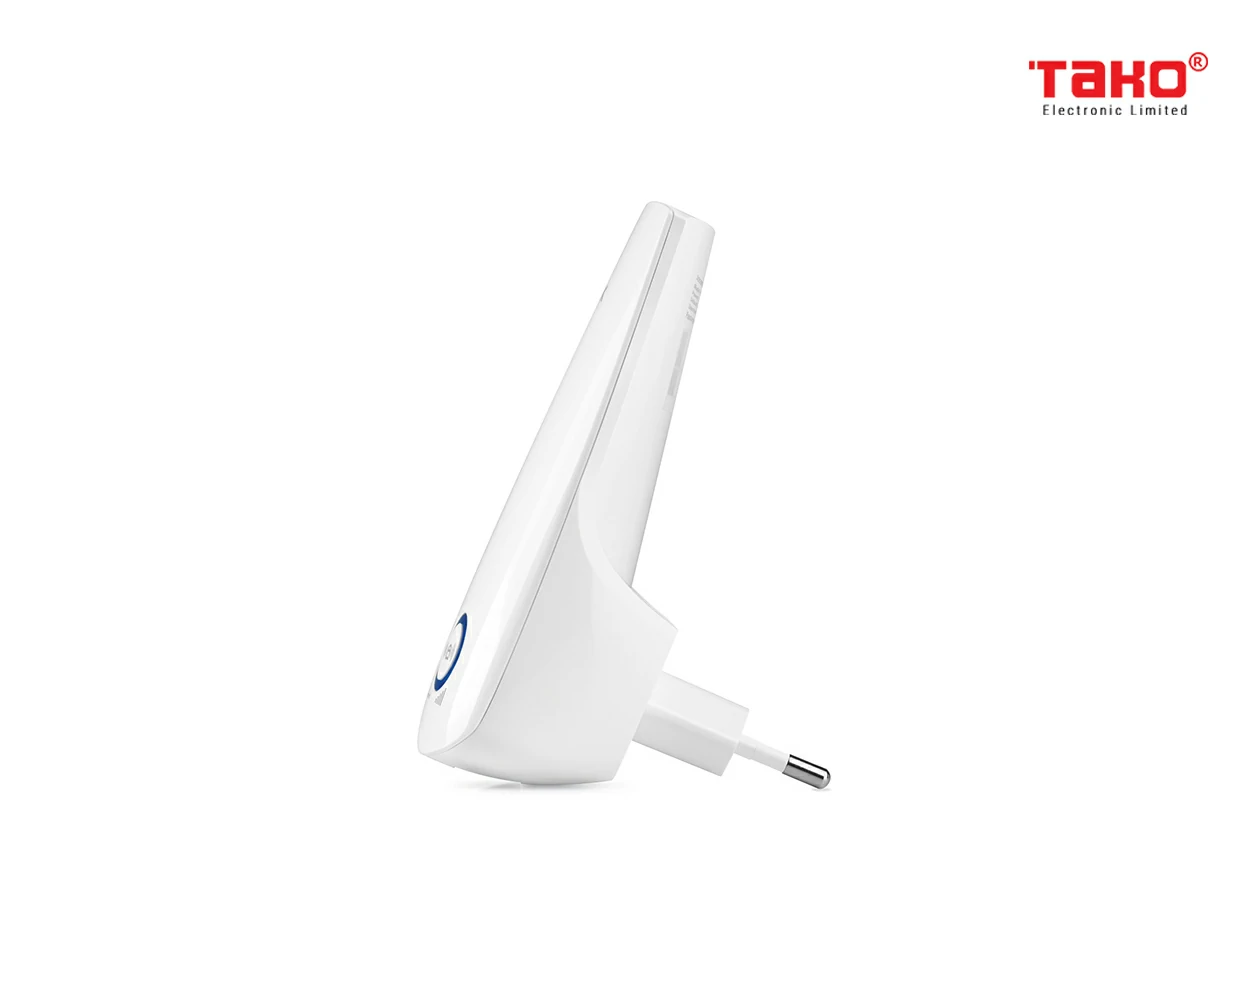 TL-WA850RE Bộ mở rộng sóng WiFi tốc độ 300Mbps 2